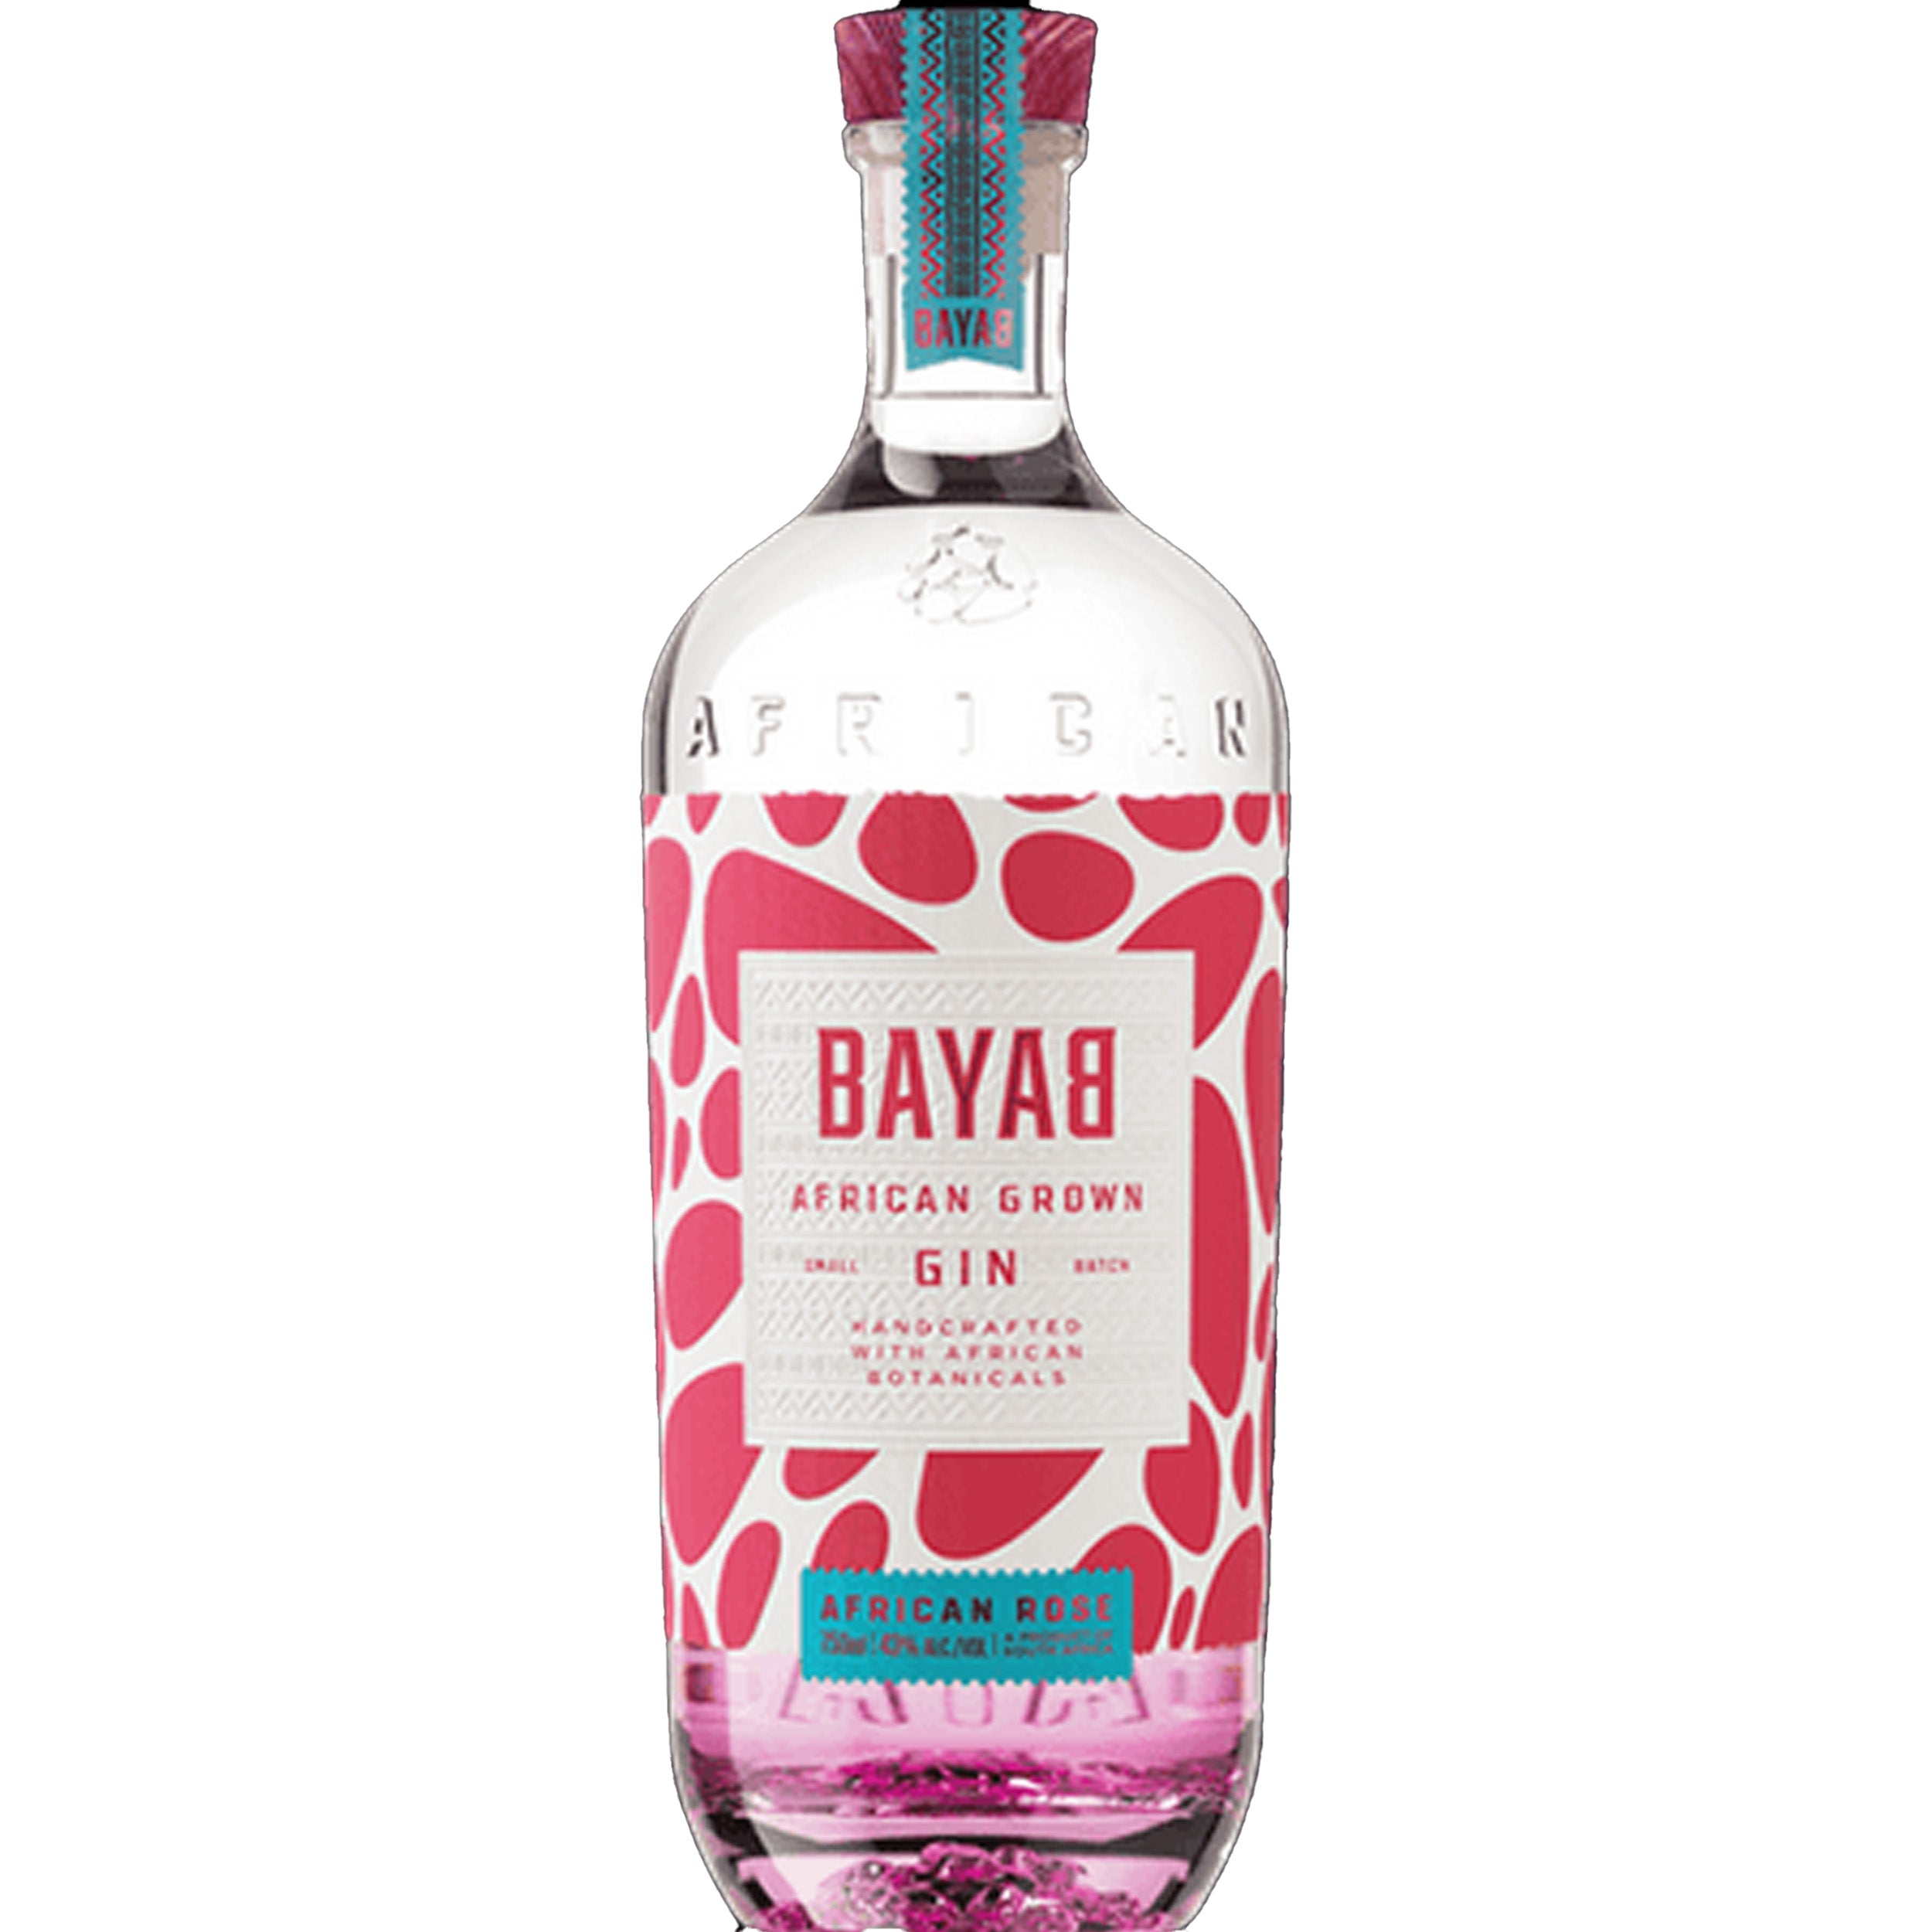 Bayab Small Batch African Rose Gin